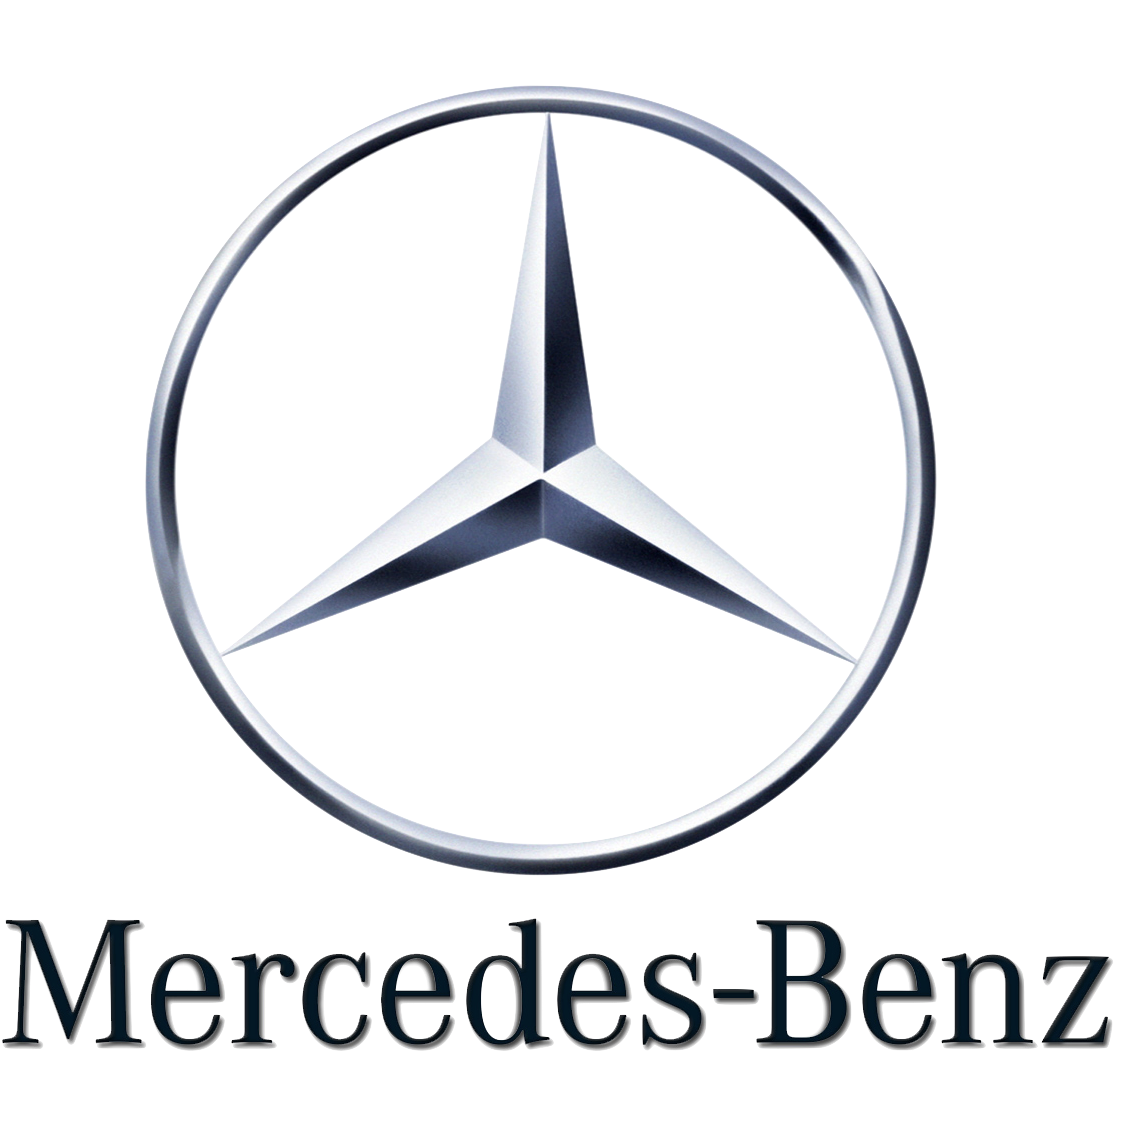 mercedes-benz-logo-png.png